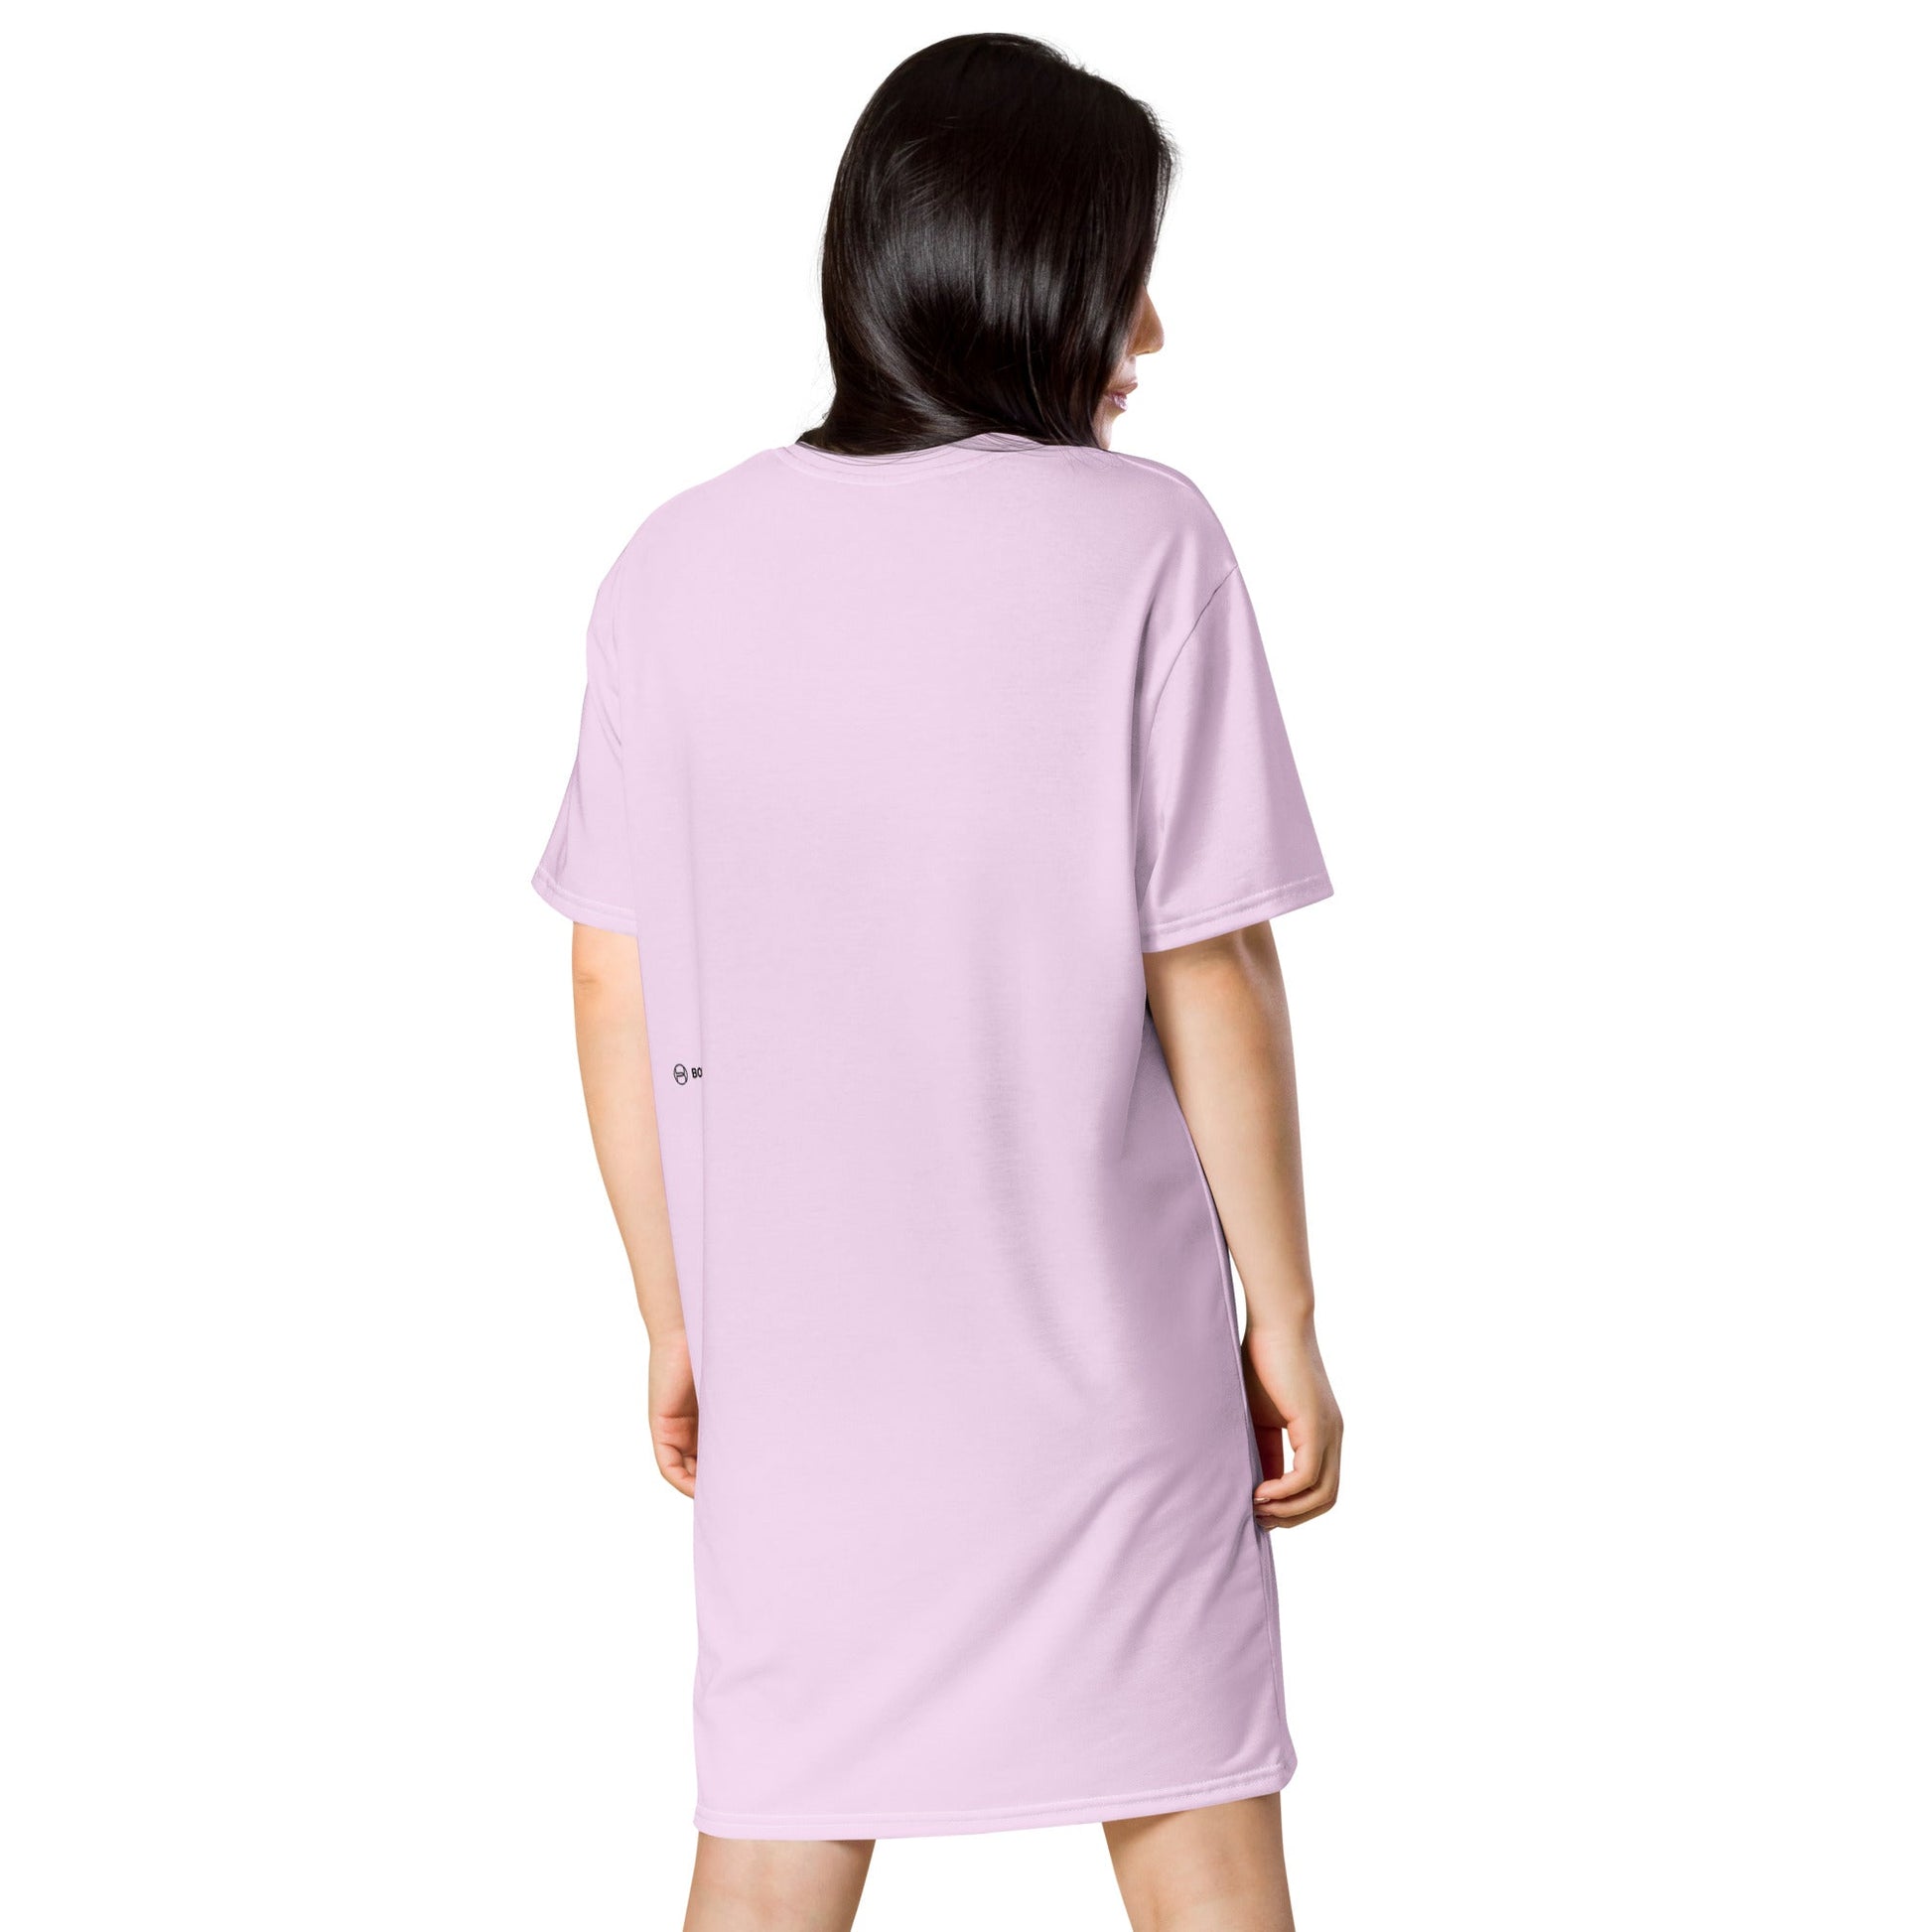 womens-t-shirt-dress-the-little-snail-pink